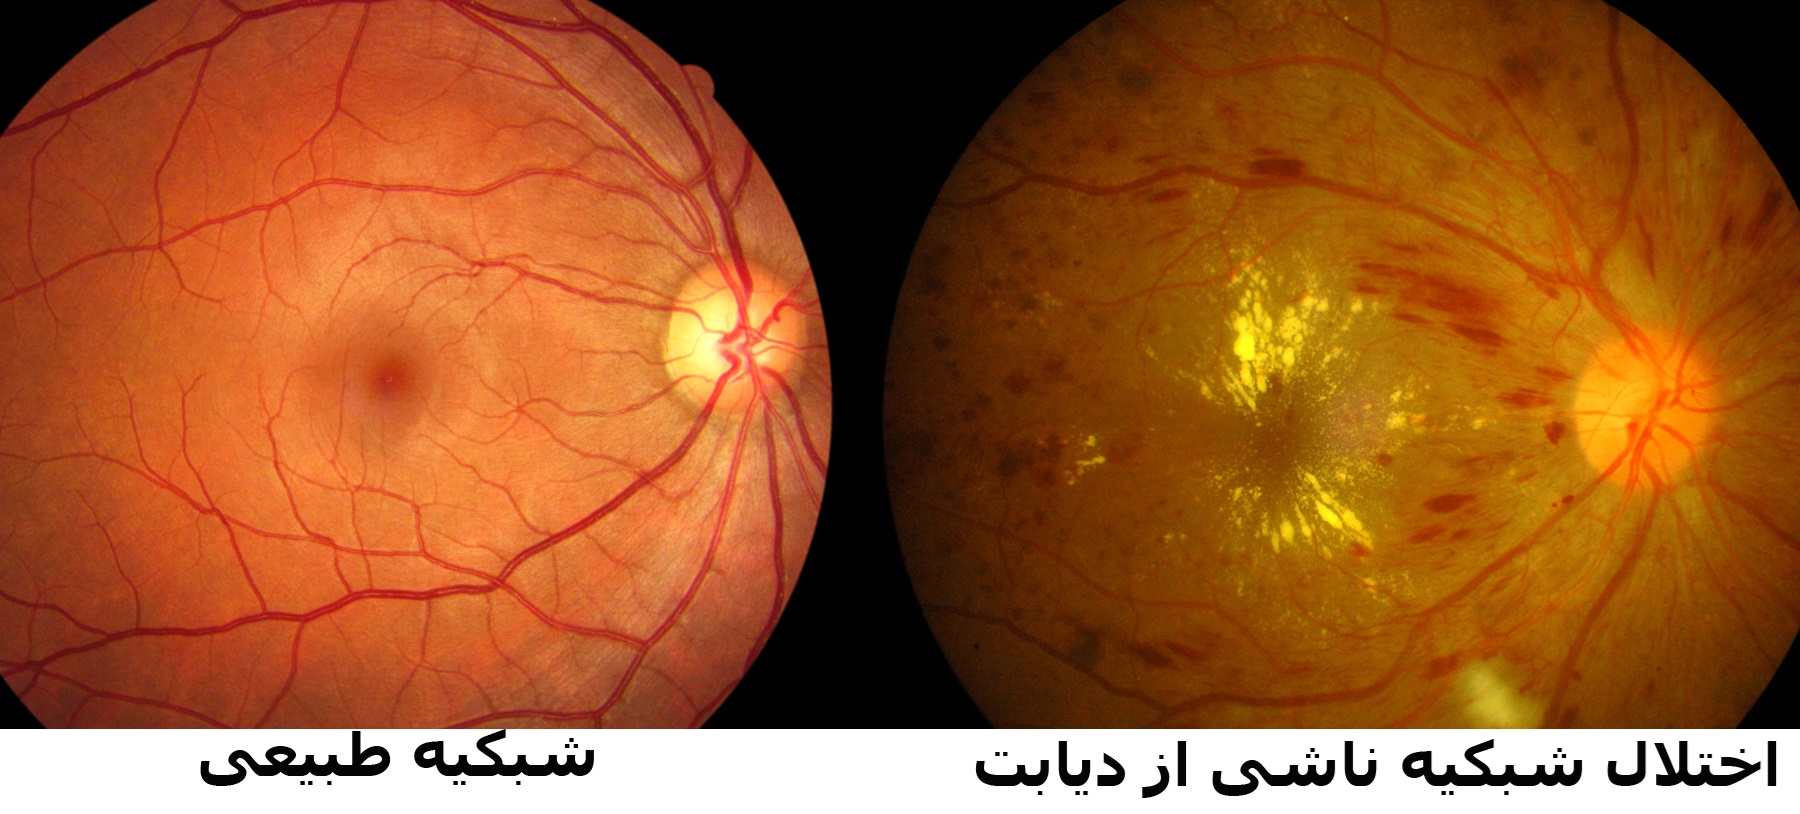 نکته بهداشتی: بیماری چشمی دیابت